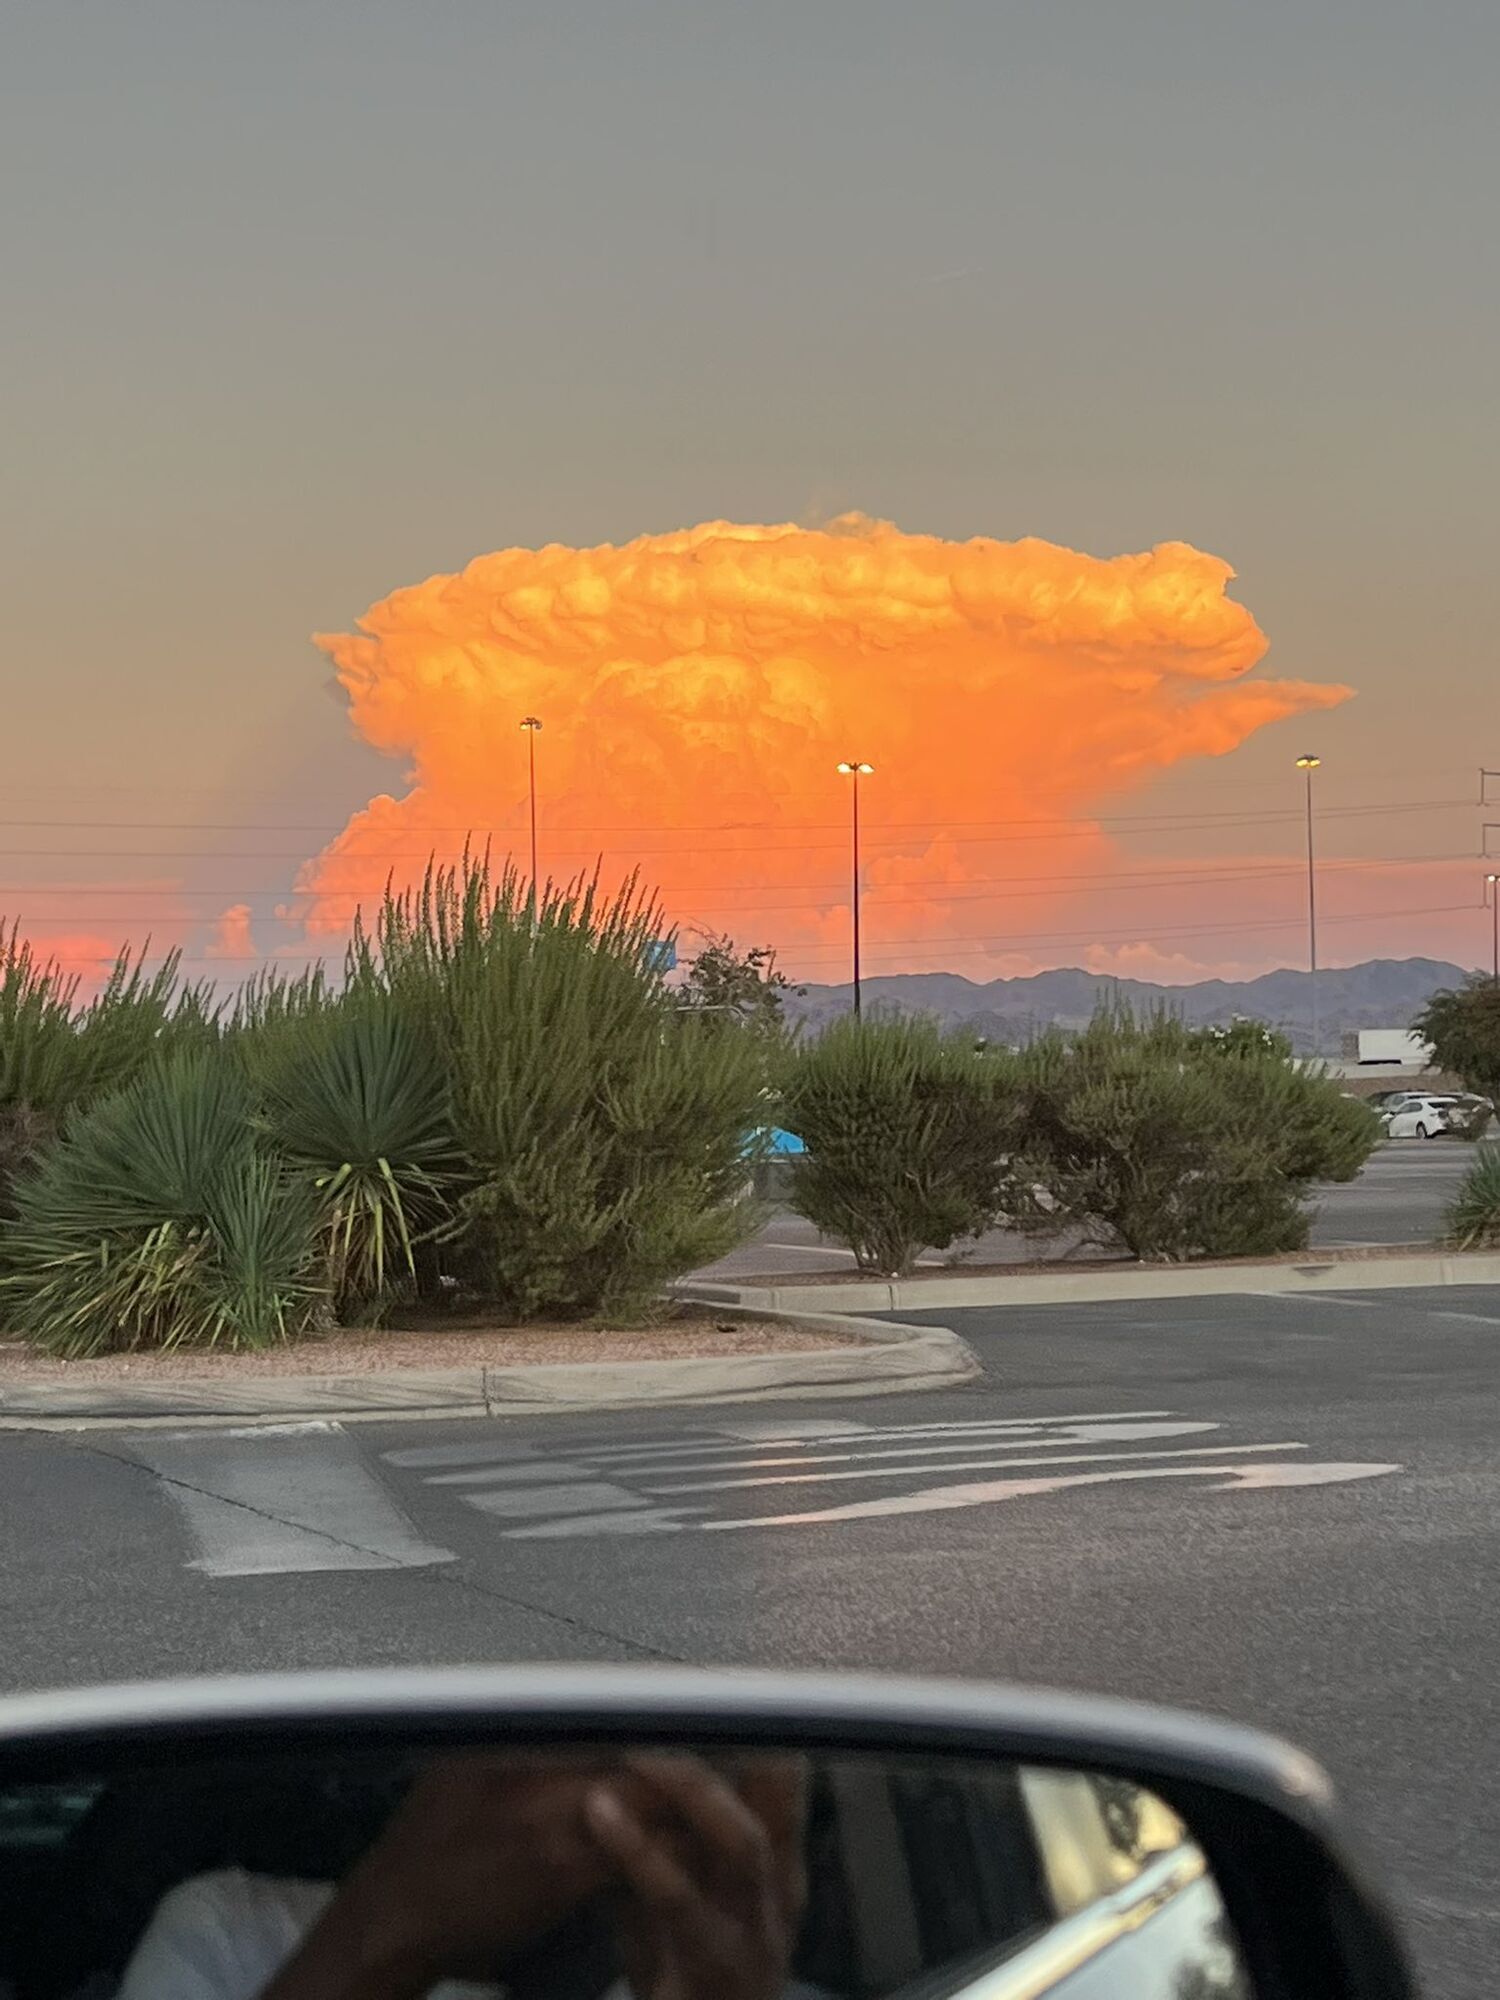 В Лас-Вегасе облако в виде "ядерного гриба" напугало горожан. Фото